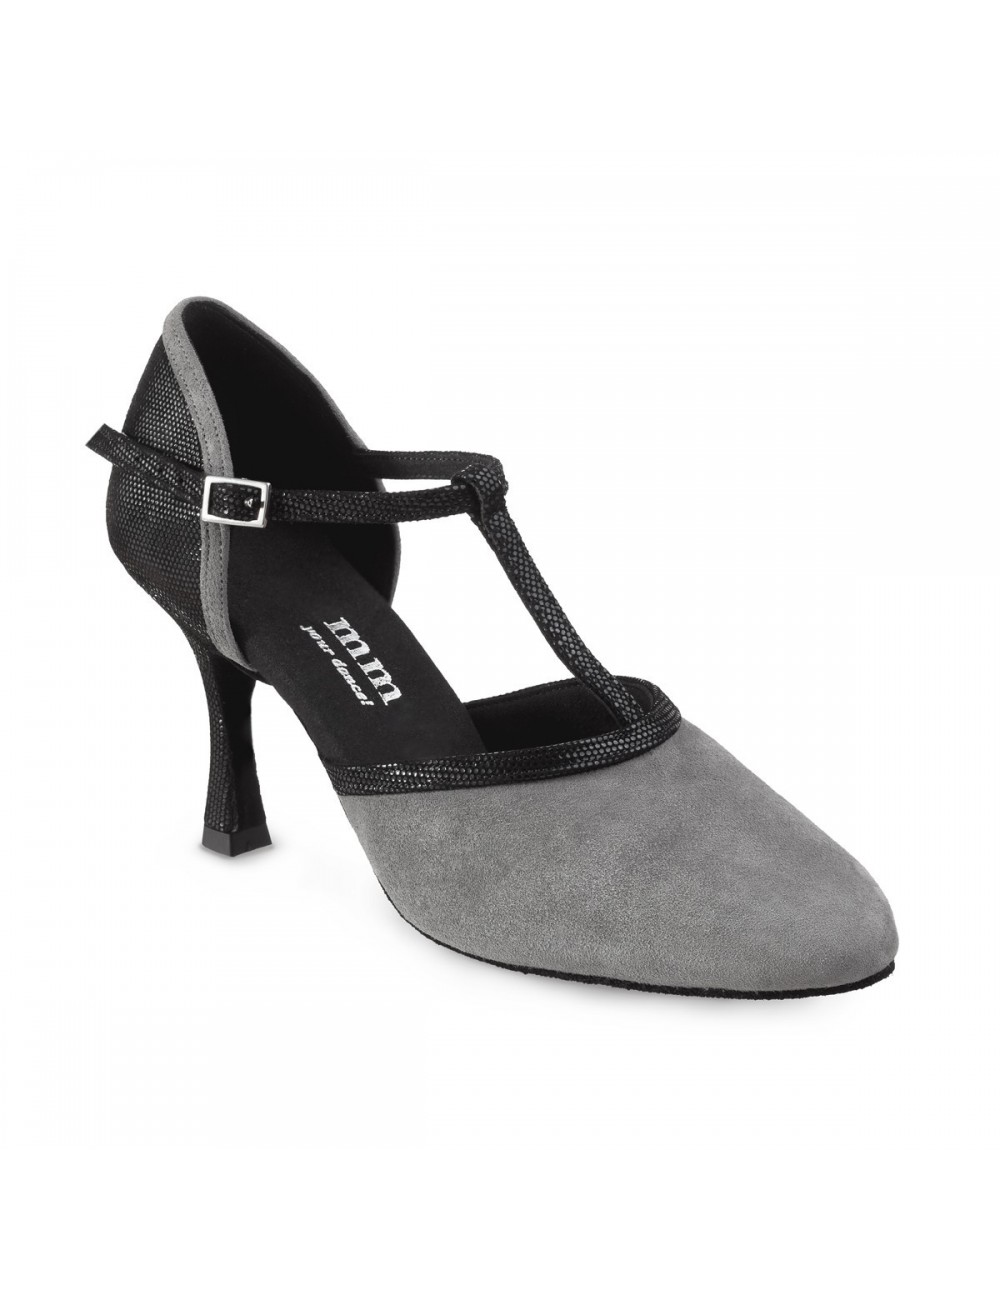 Zapato Salón Señora Piel – Zapatos de mujer